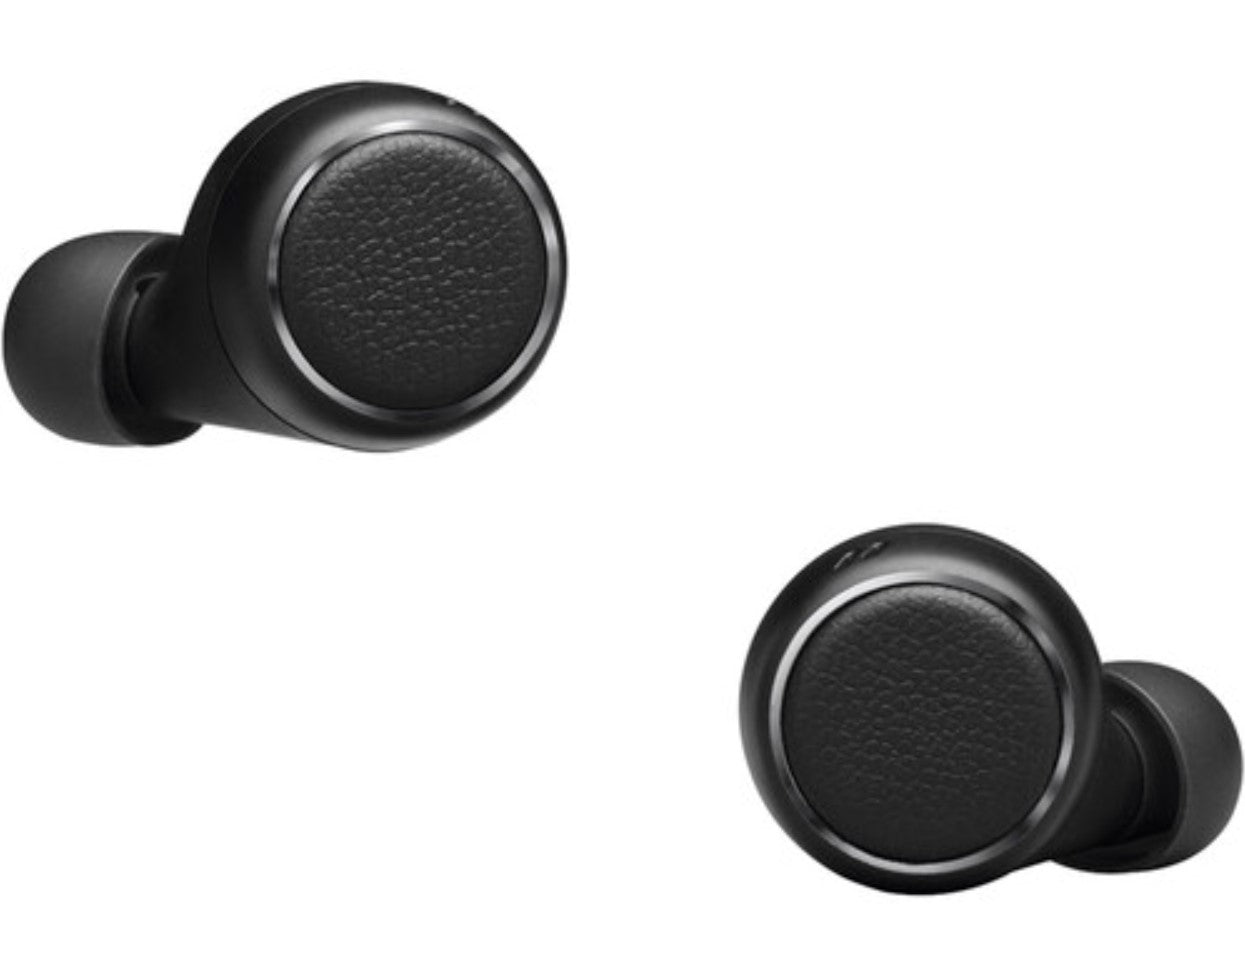 Harman Kardon HKFLYTWSBLKAM FLY Wireless In-Ear Headphone Black - Certified Refurbished